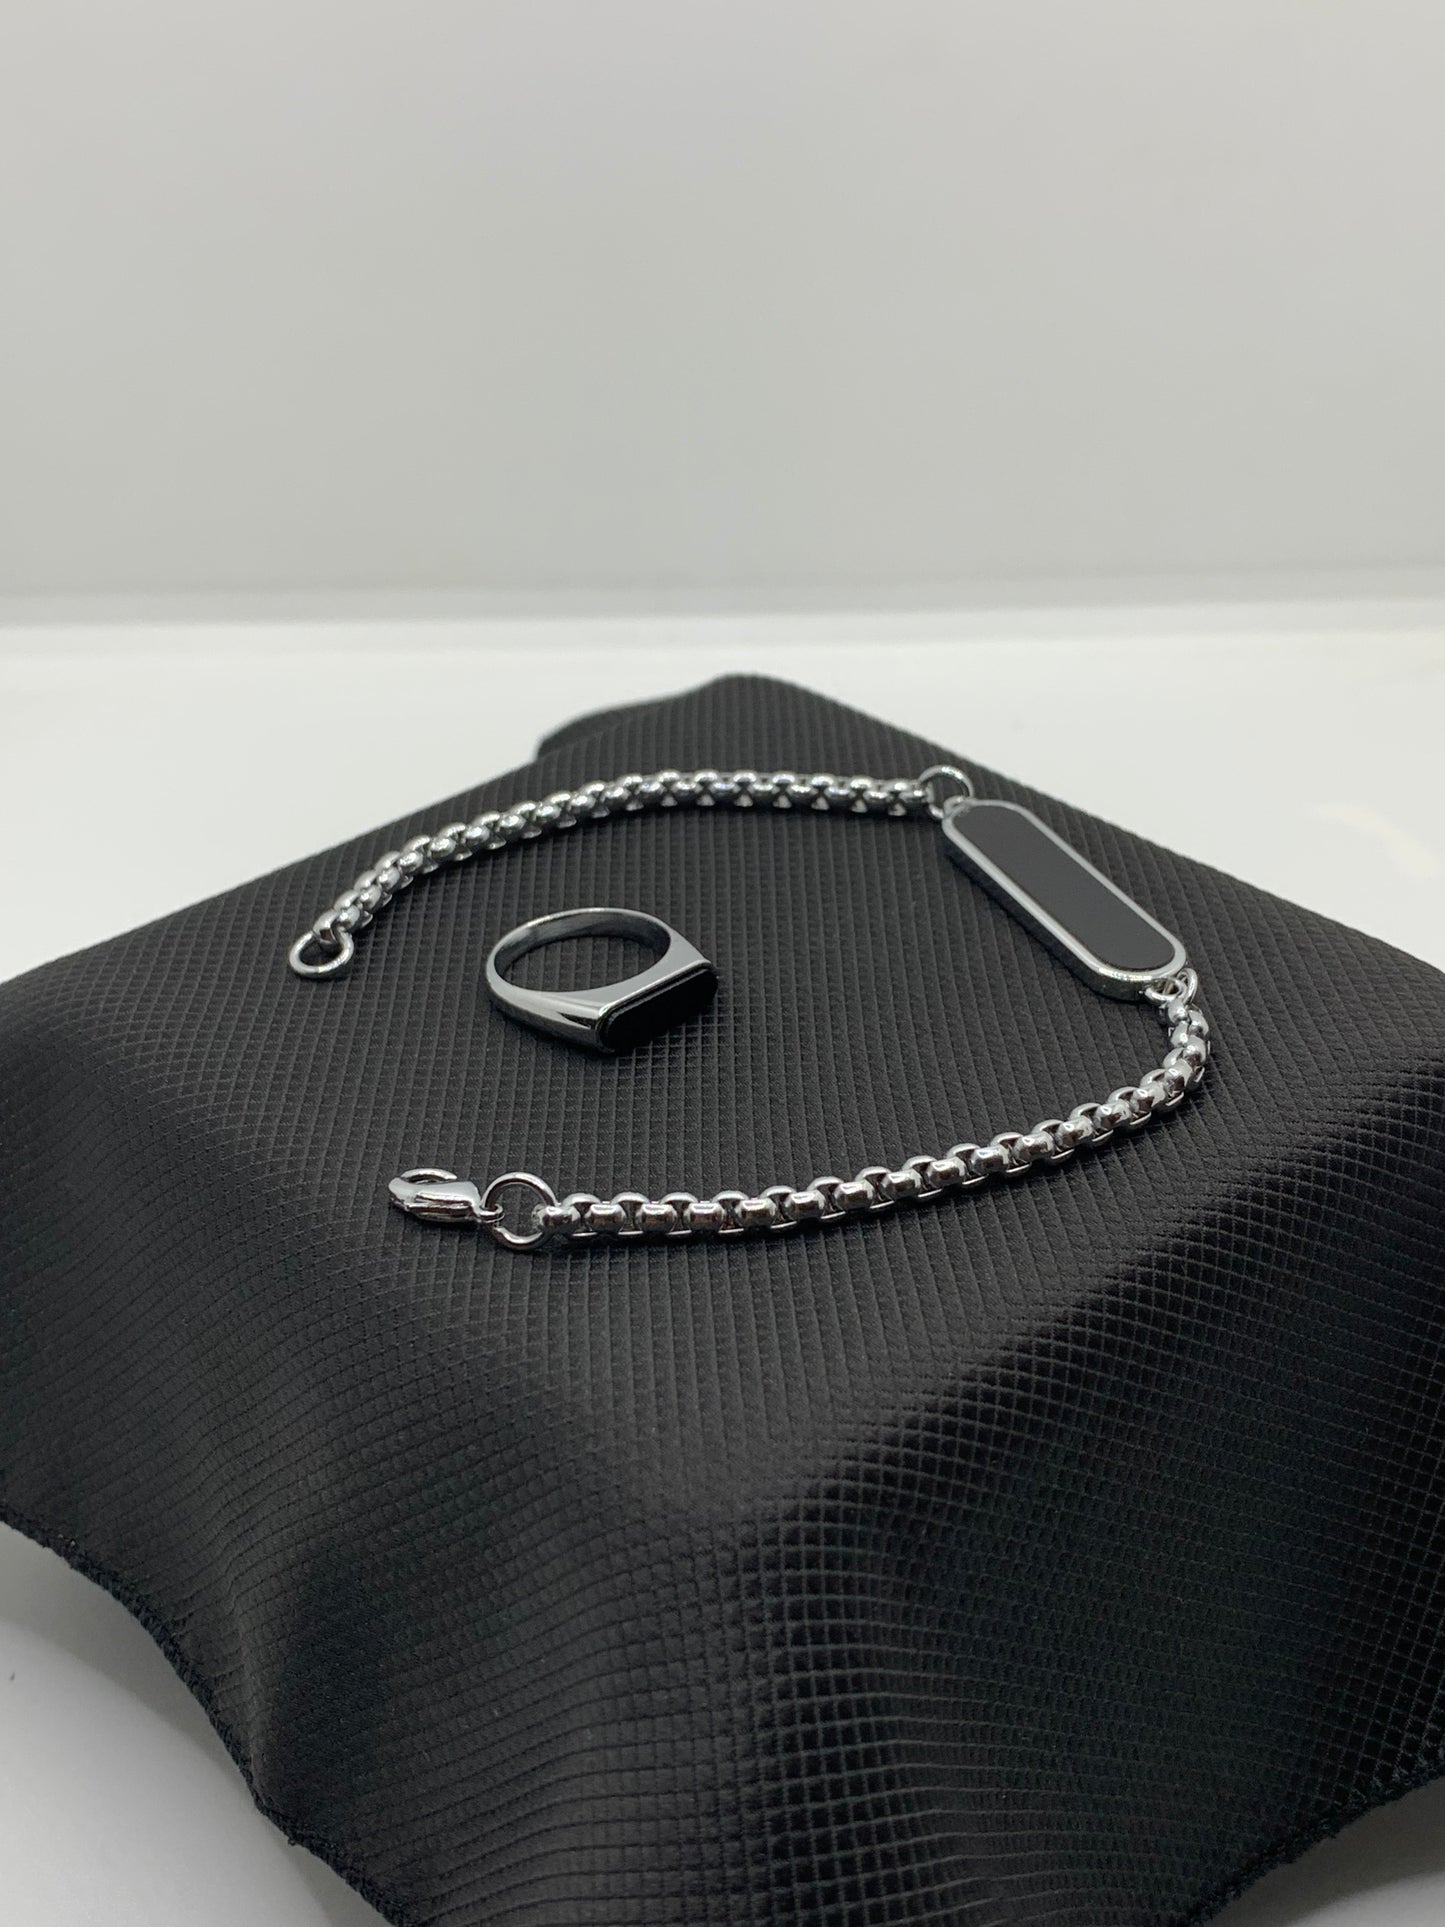 Bracelet & Ring Combo Package